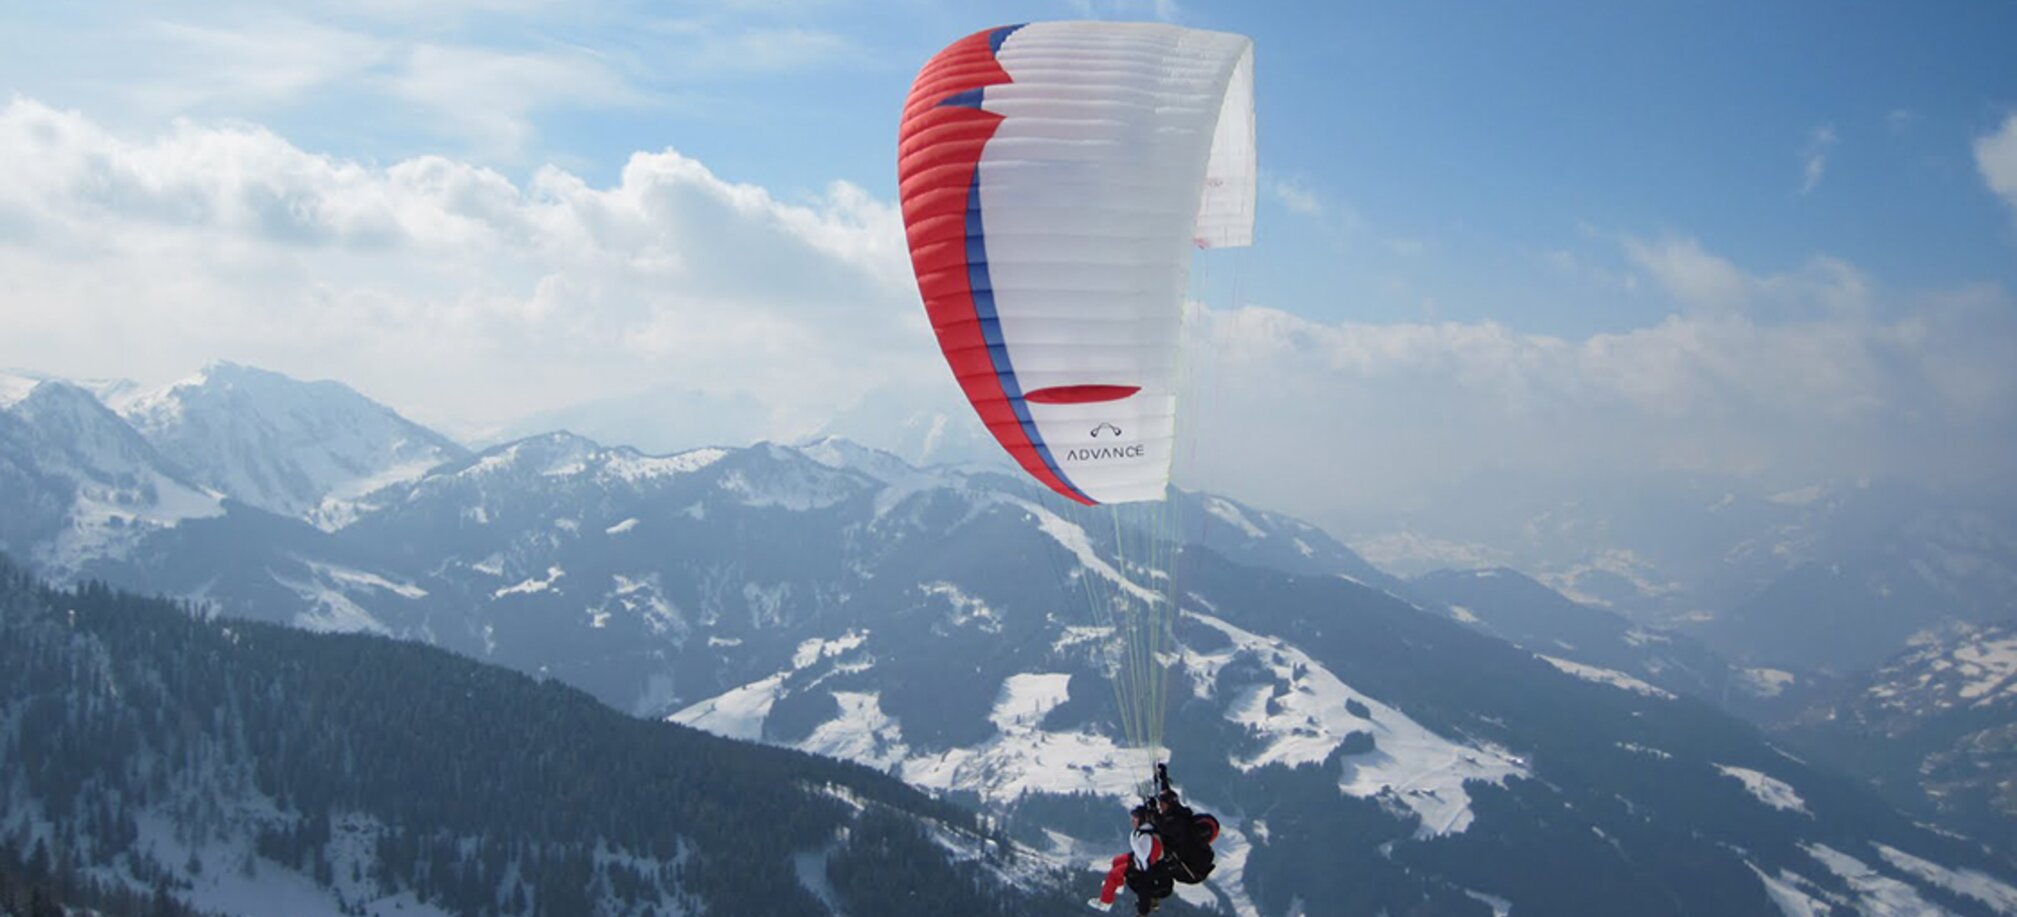 Paragleiter mit rot-blau-weißem  Schirm fliegt über von Wald und schneereichen Pisten bedeckte Berge